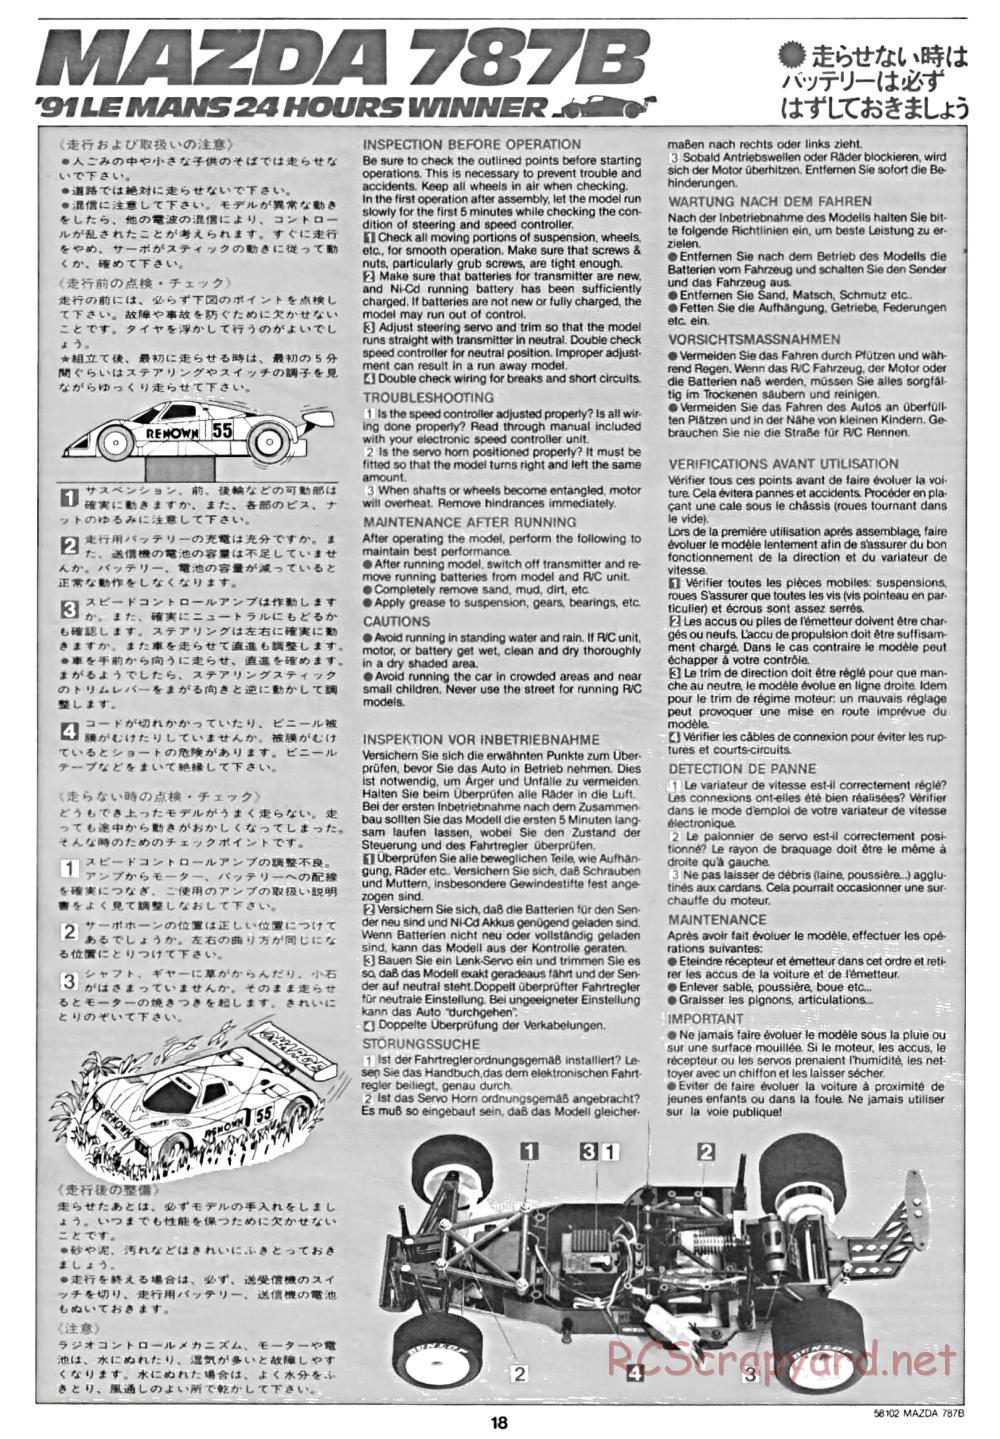 Tamiya - Mazda 787B - Group-C Chassis - Manual - Page 18